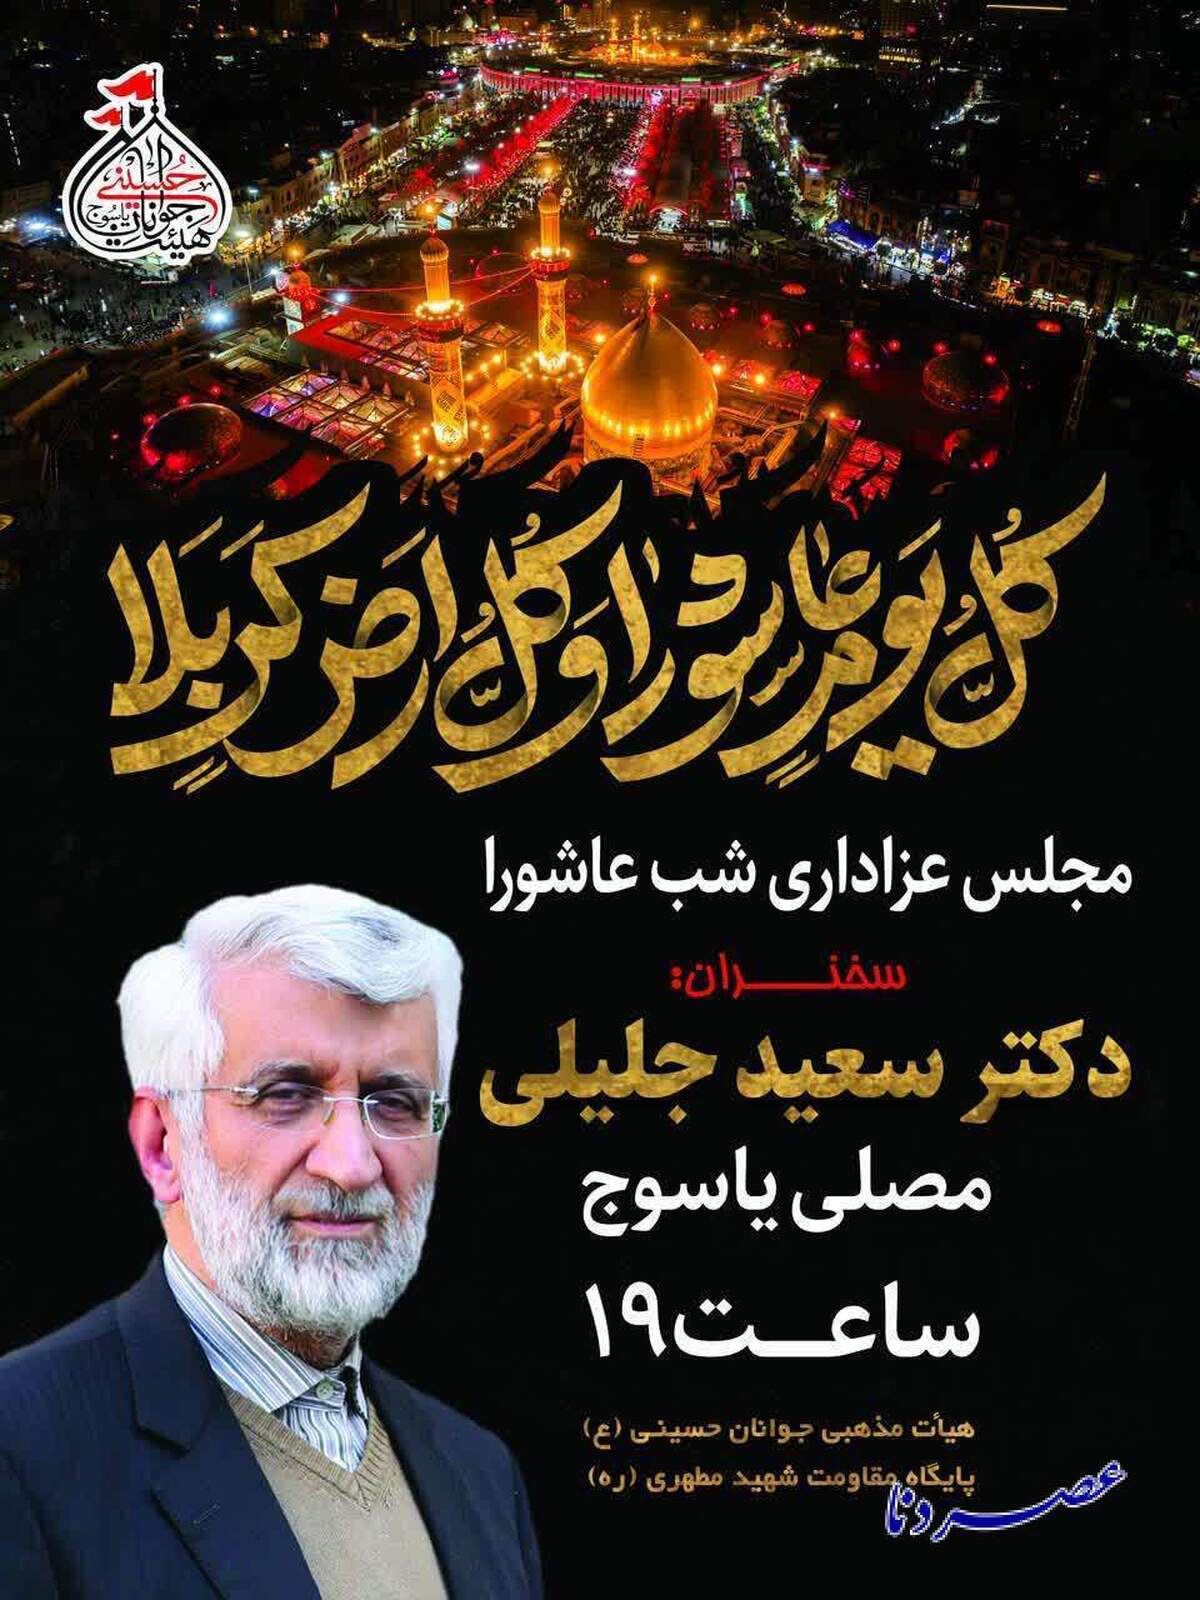 سعید جلیلی امشب در مصلی امام خمینی شهر یاسوج سخنرانی خواهد کرد